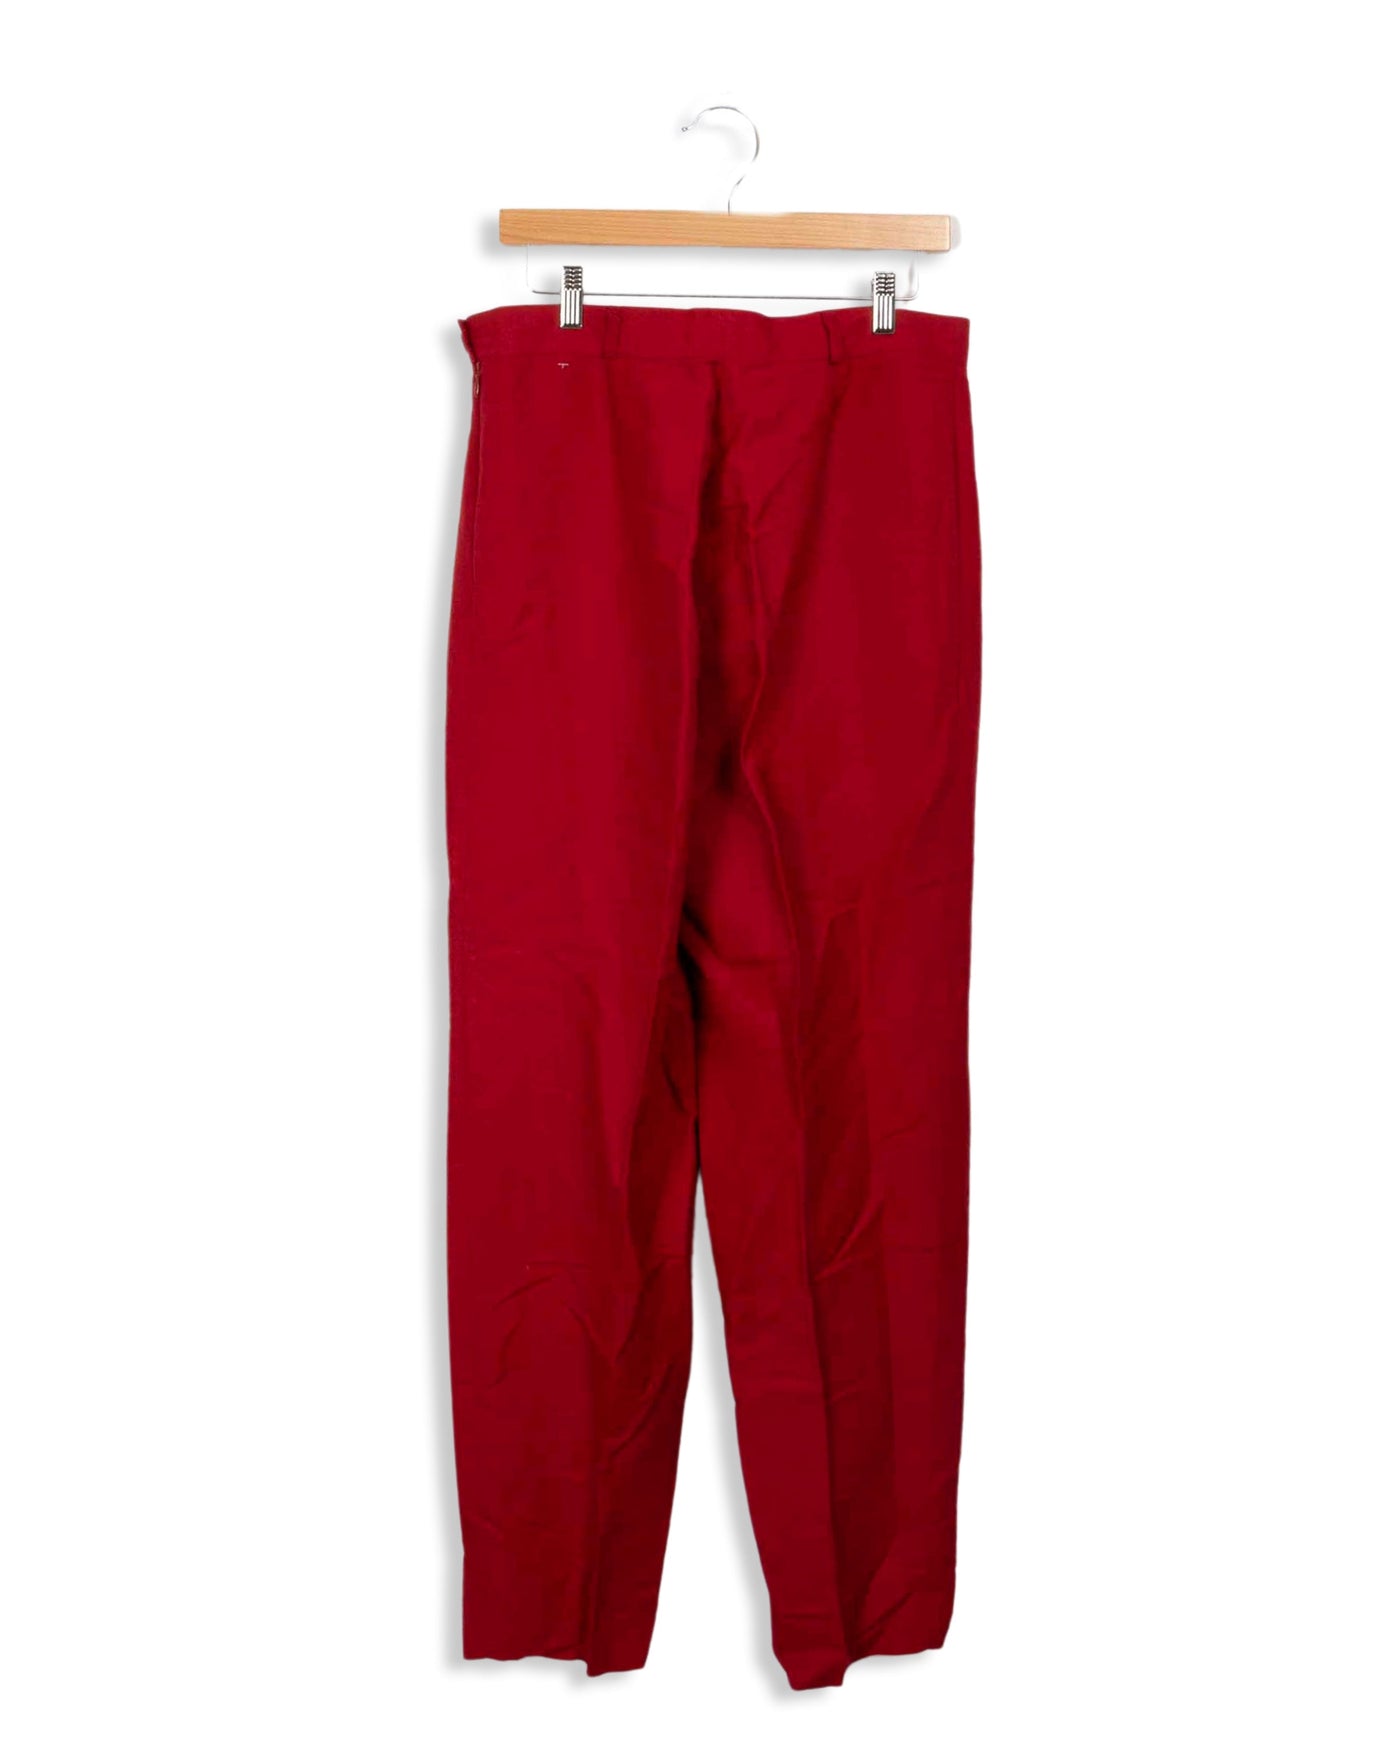 Pantalon coupe large rouge ZAPA - 46